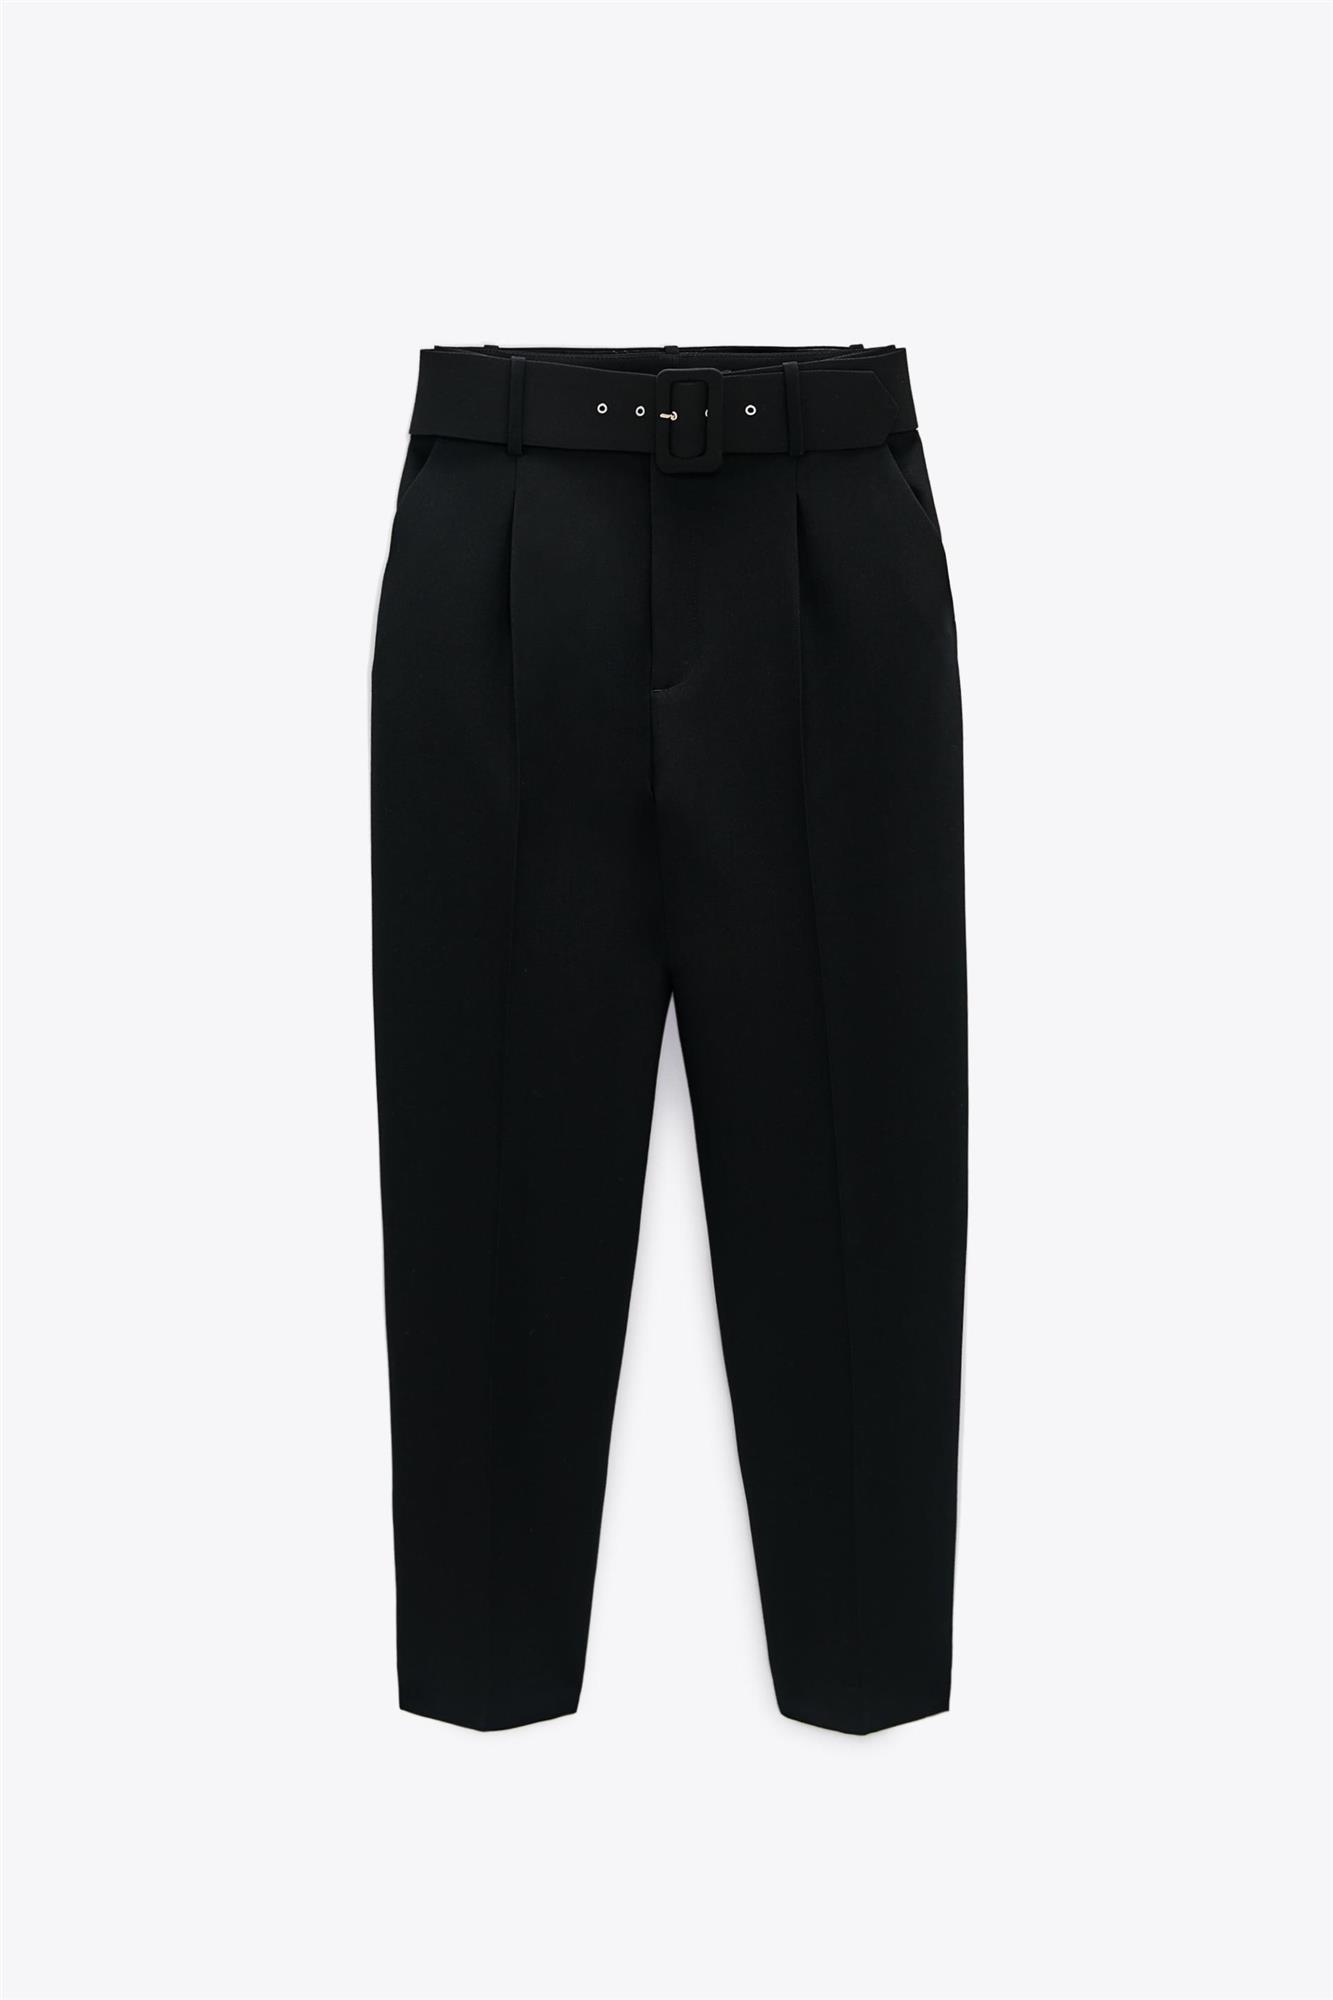 Pantalón de tiro alto en color negro clásico, Zara